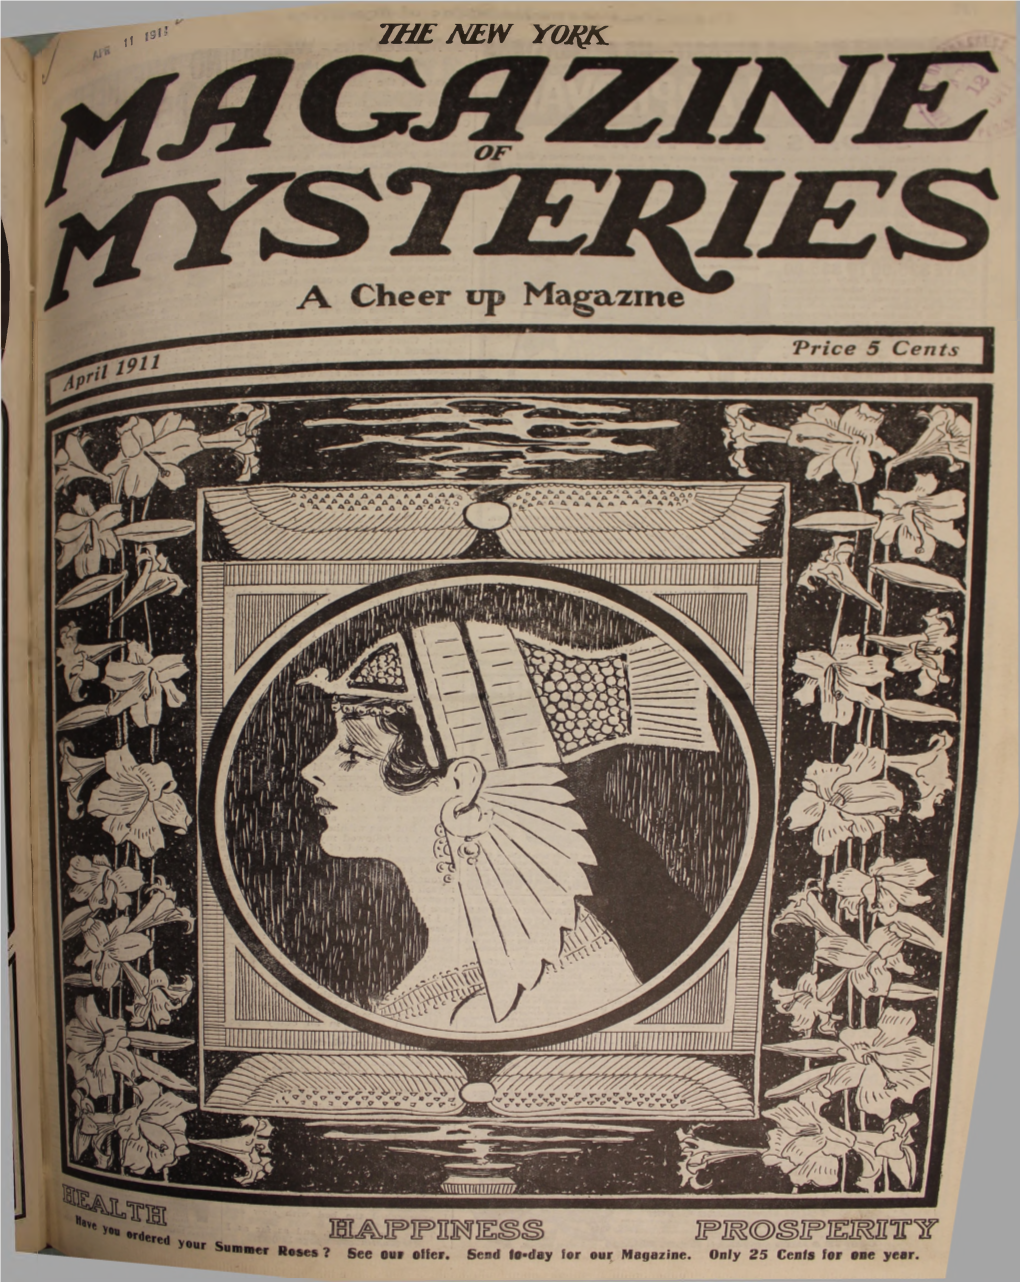 NY Magazine of Mysteries V21 N6 Apr 1911